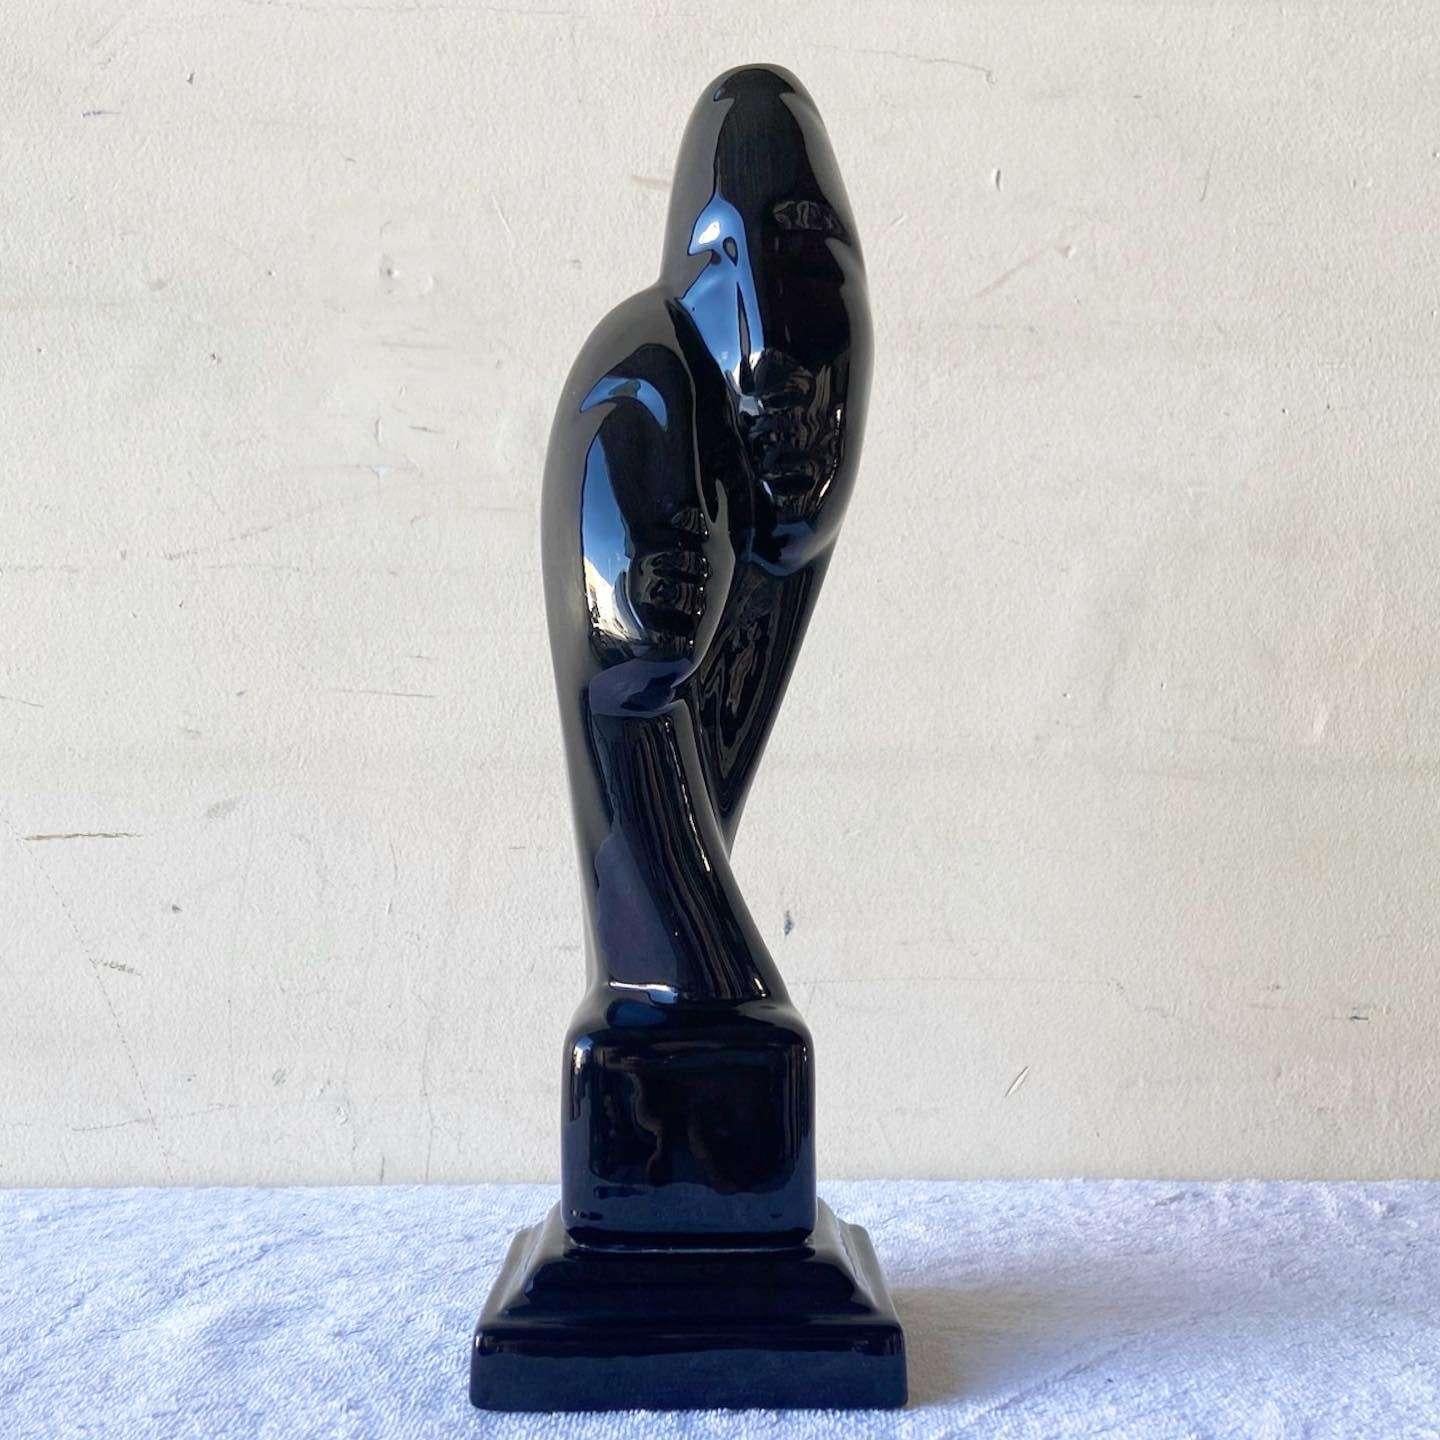 Étonnante sculpture en céramique postmoderne vintage. La sculpture est un buste à deux têtes avec une finition noire brillante.
